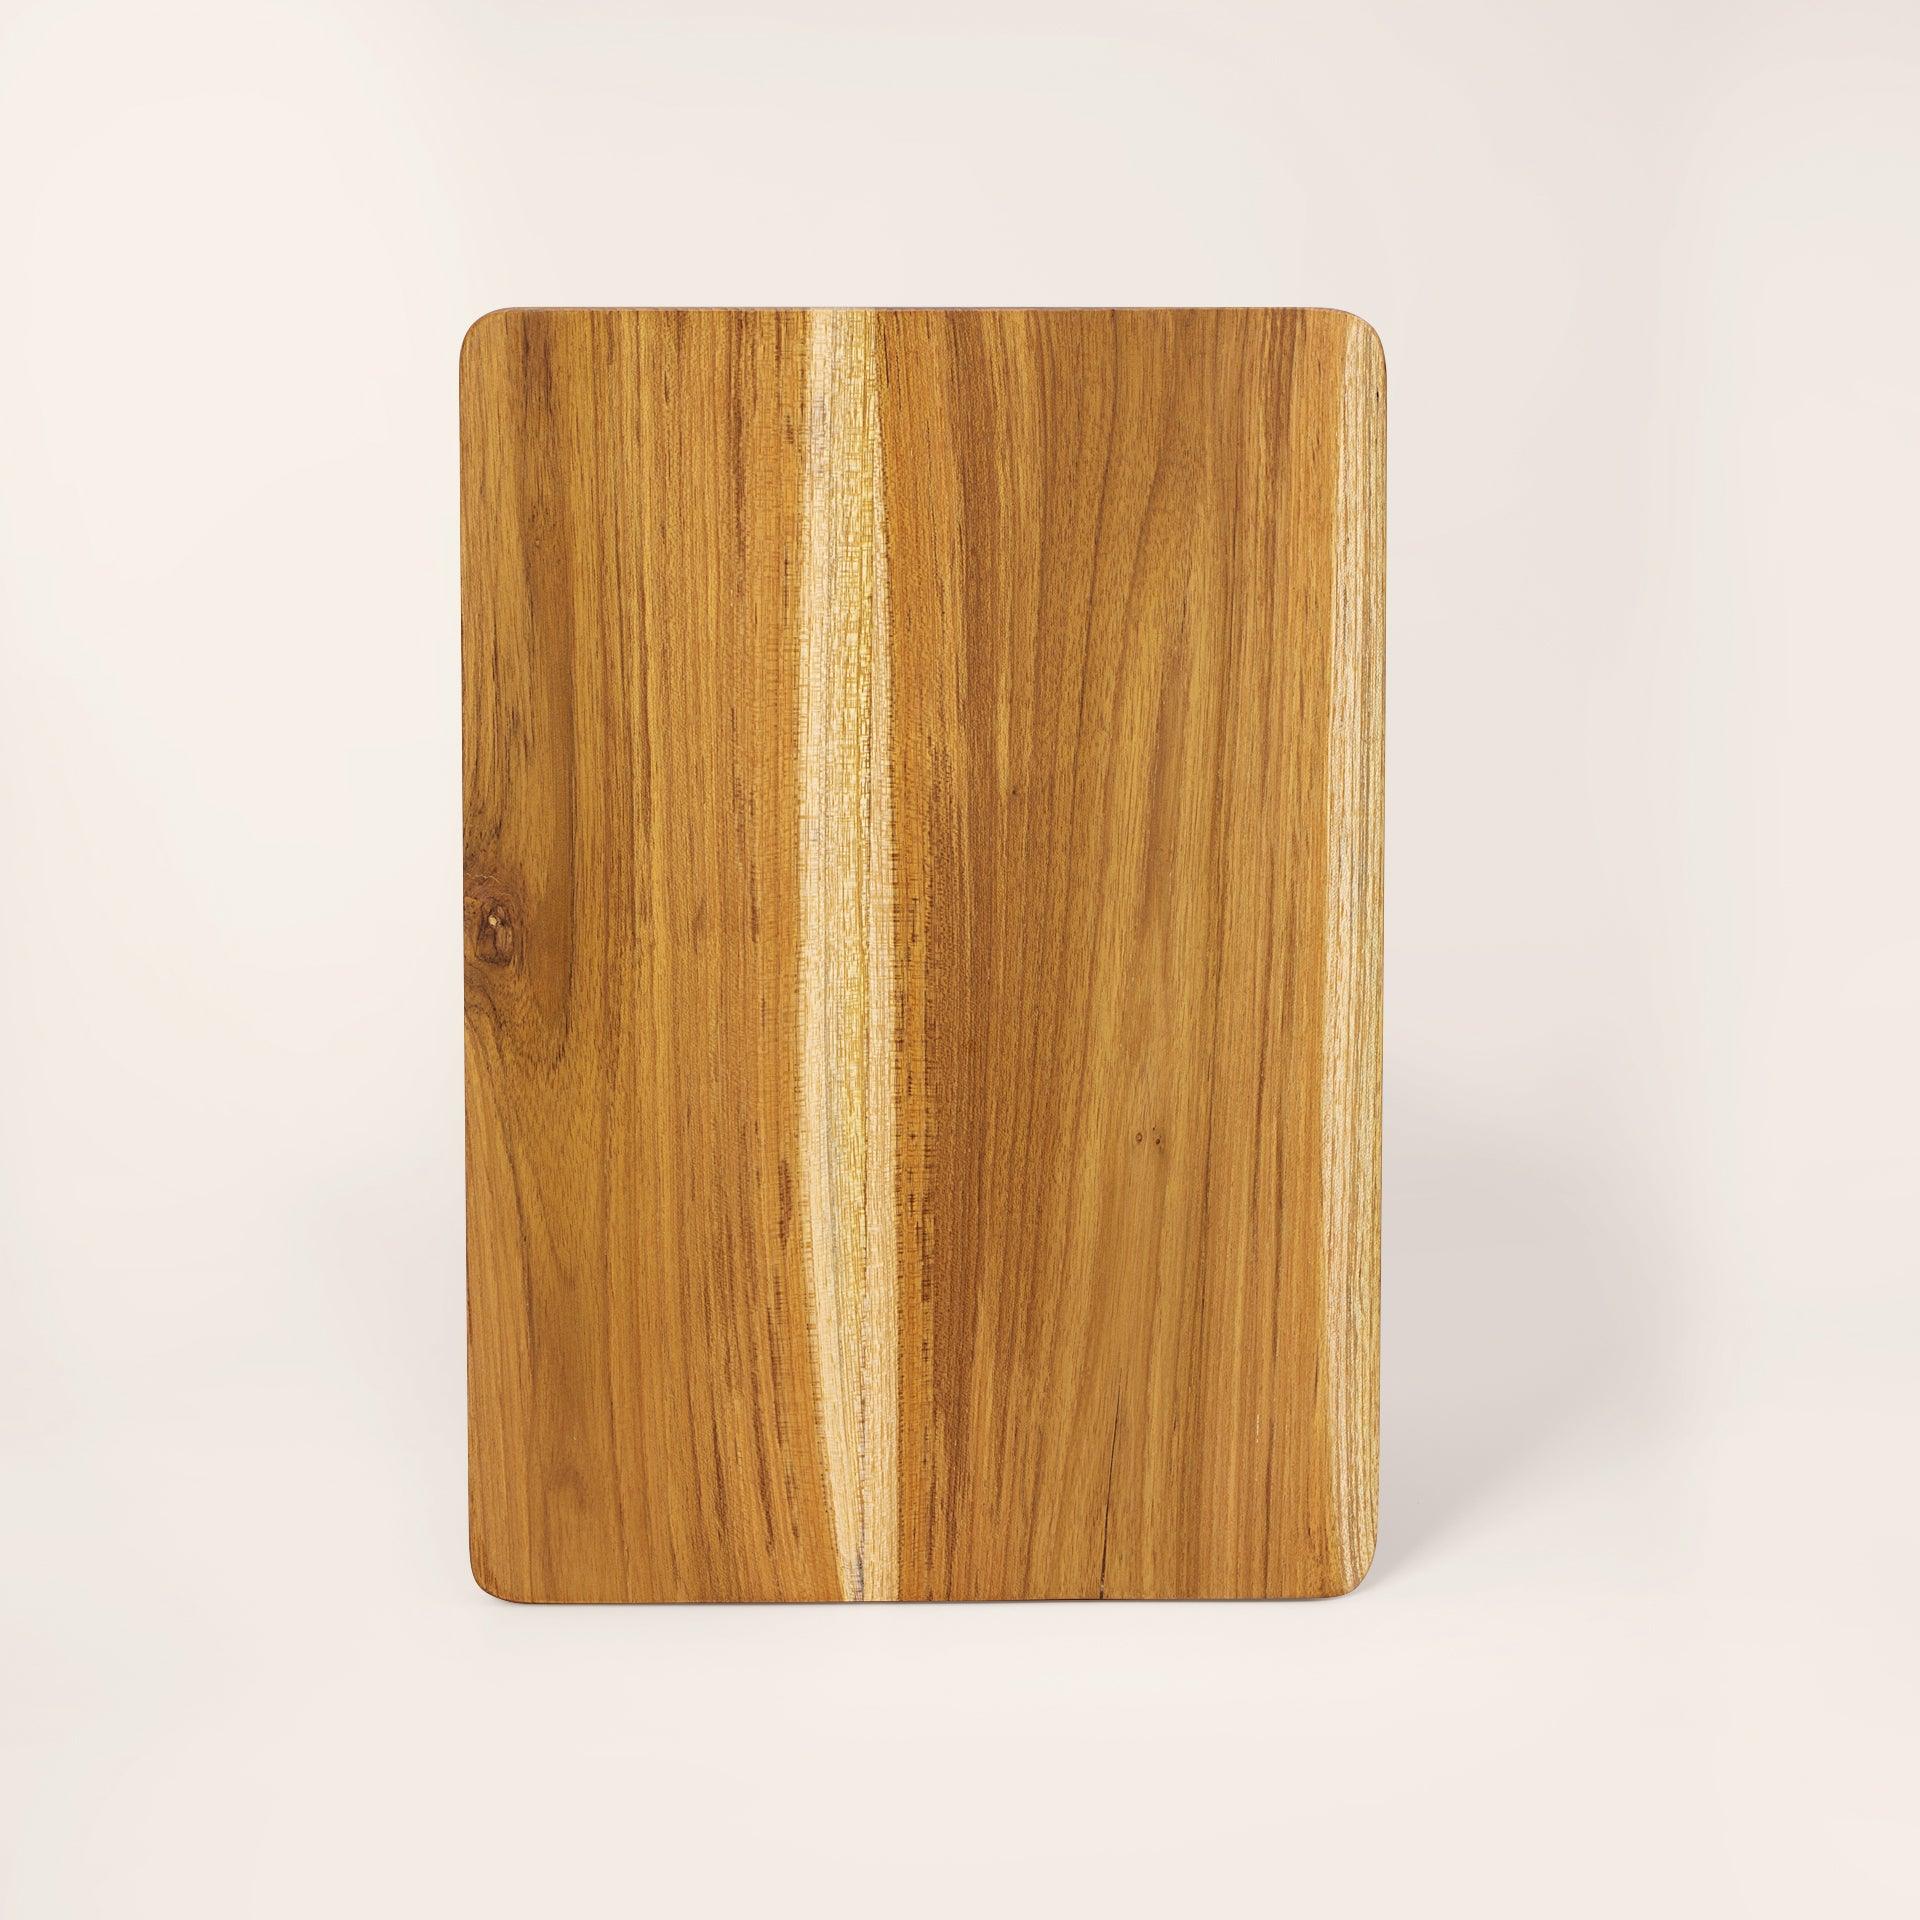 in teak wooden chopping board